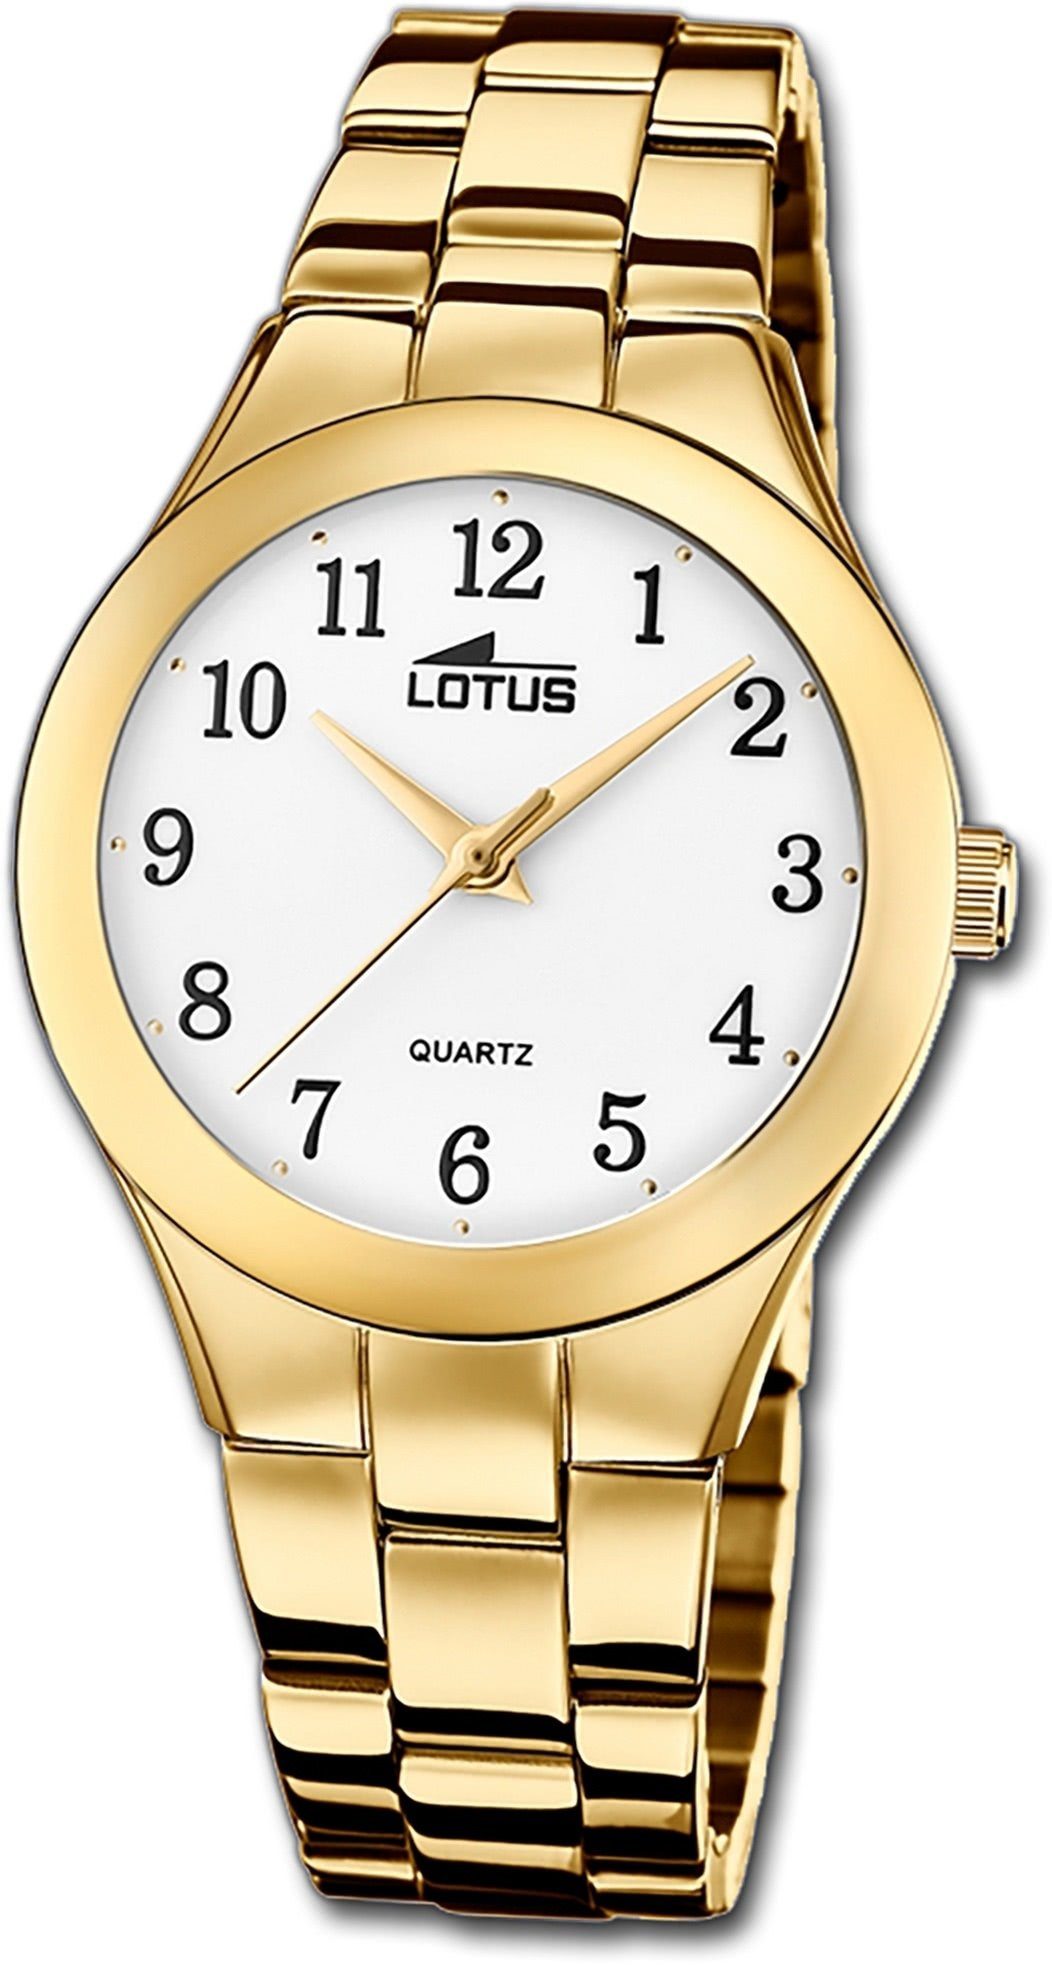 Damen Uhren Lotus Quarzuhr D2UL18742/1 Lotus Edelstahl Damen Uhr 18742/1, Damenuhr mit Edelstahlarmband, rundes Gehäuse, mittel 